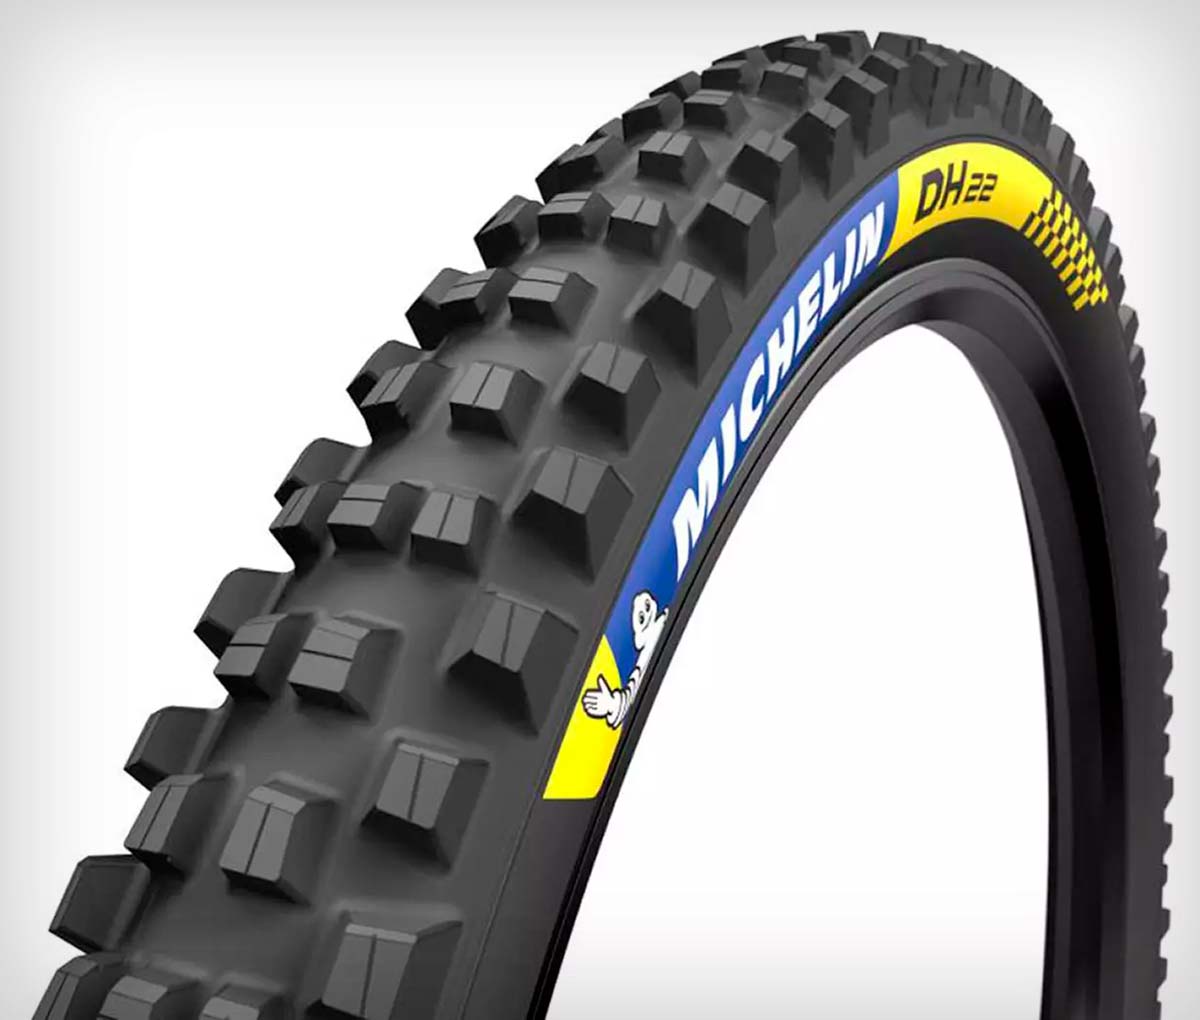 Michelin presenta su gama de neumáticos de Descenso DH 22, DH 34 y DH Mud